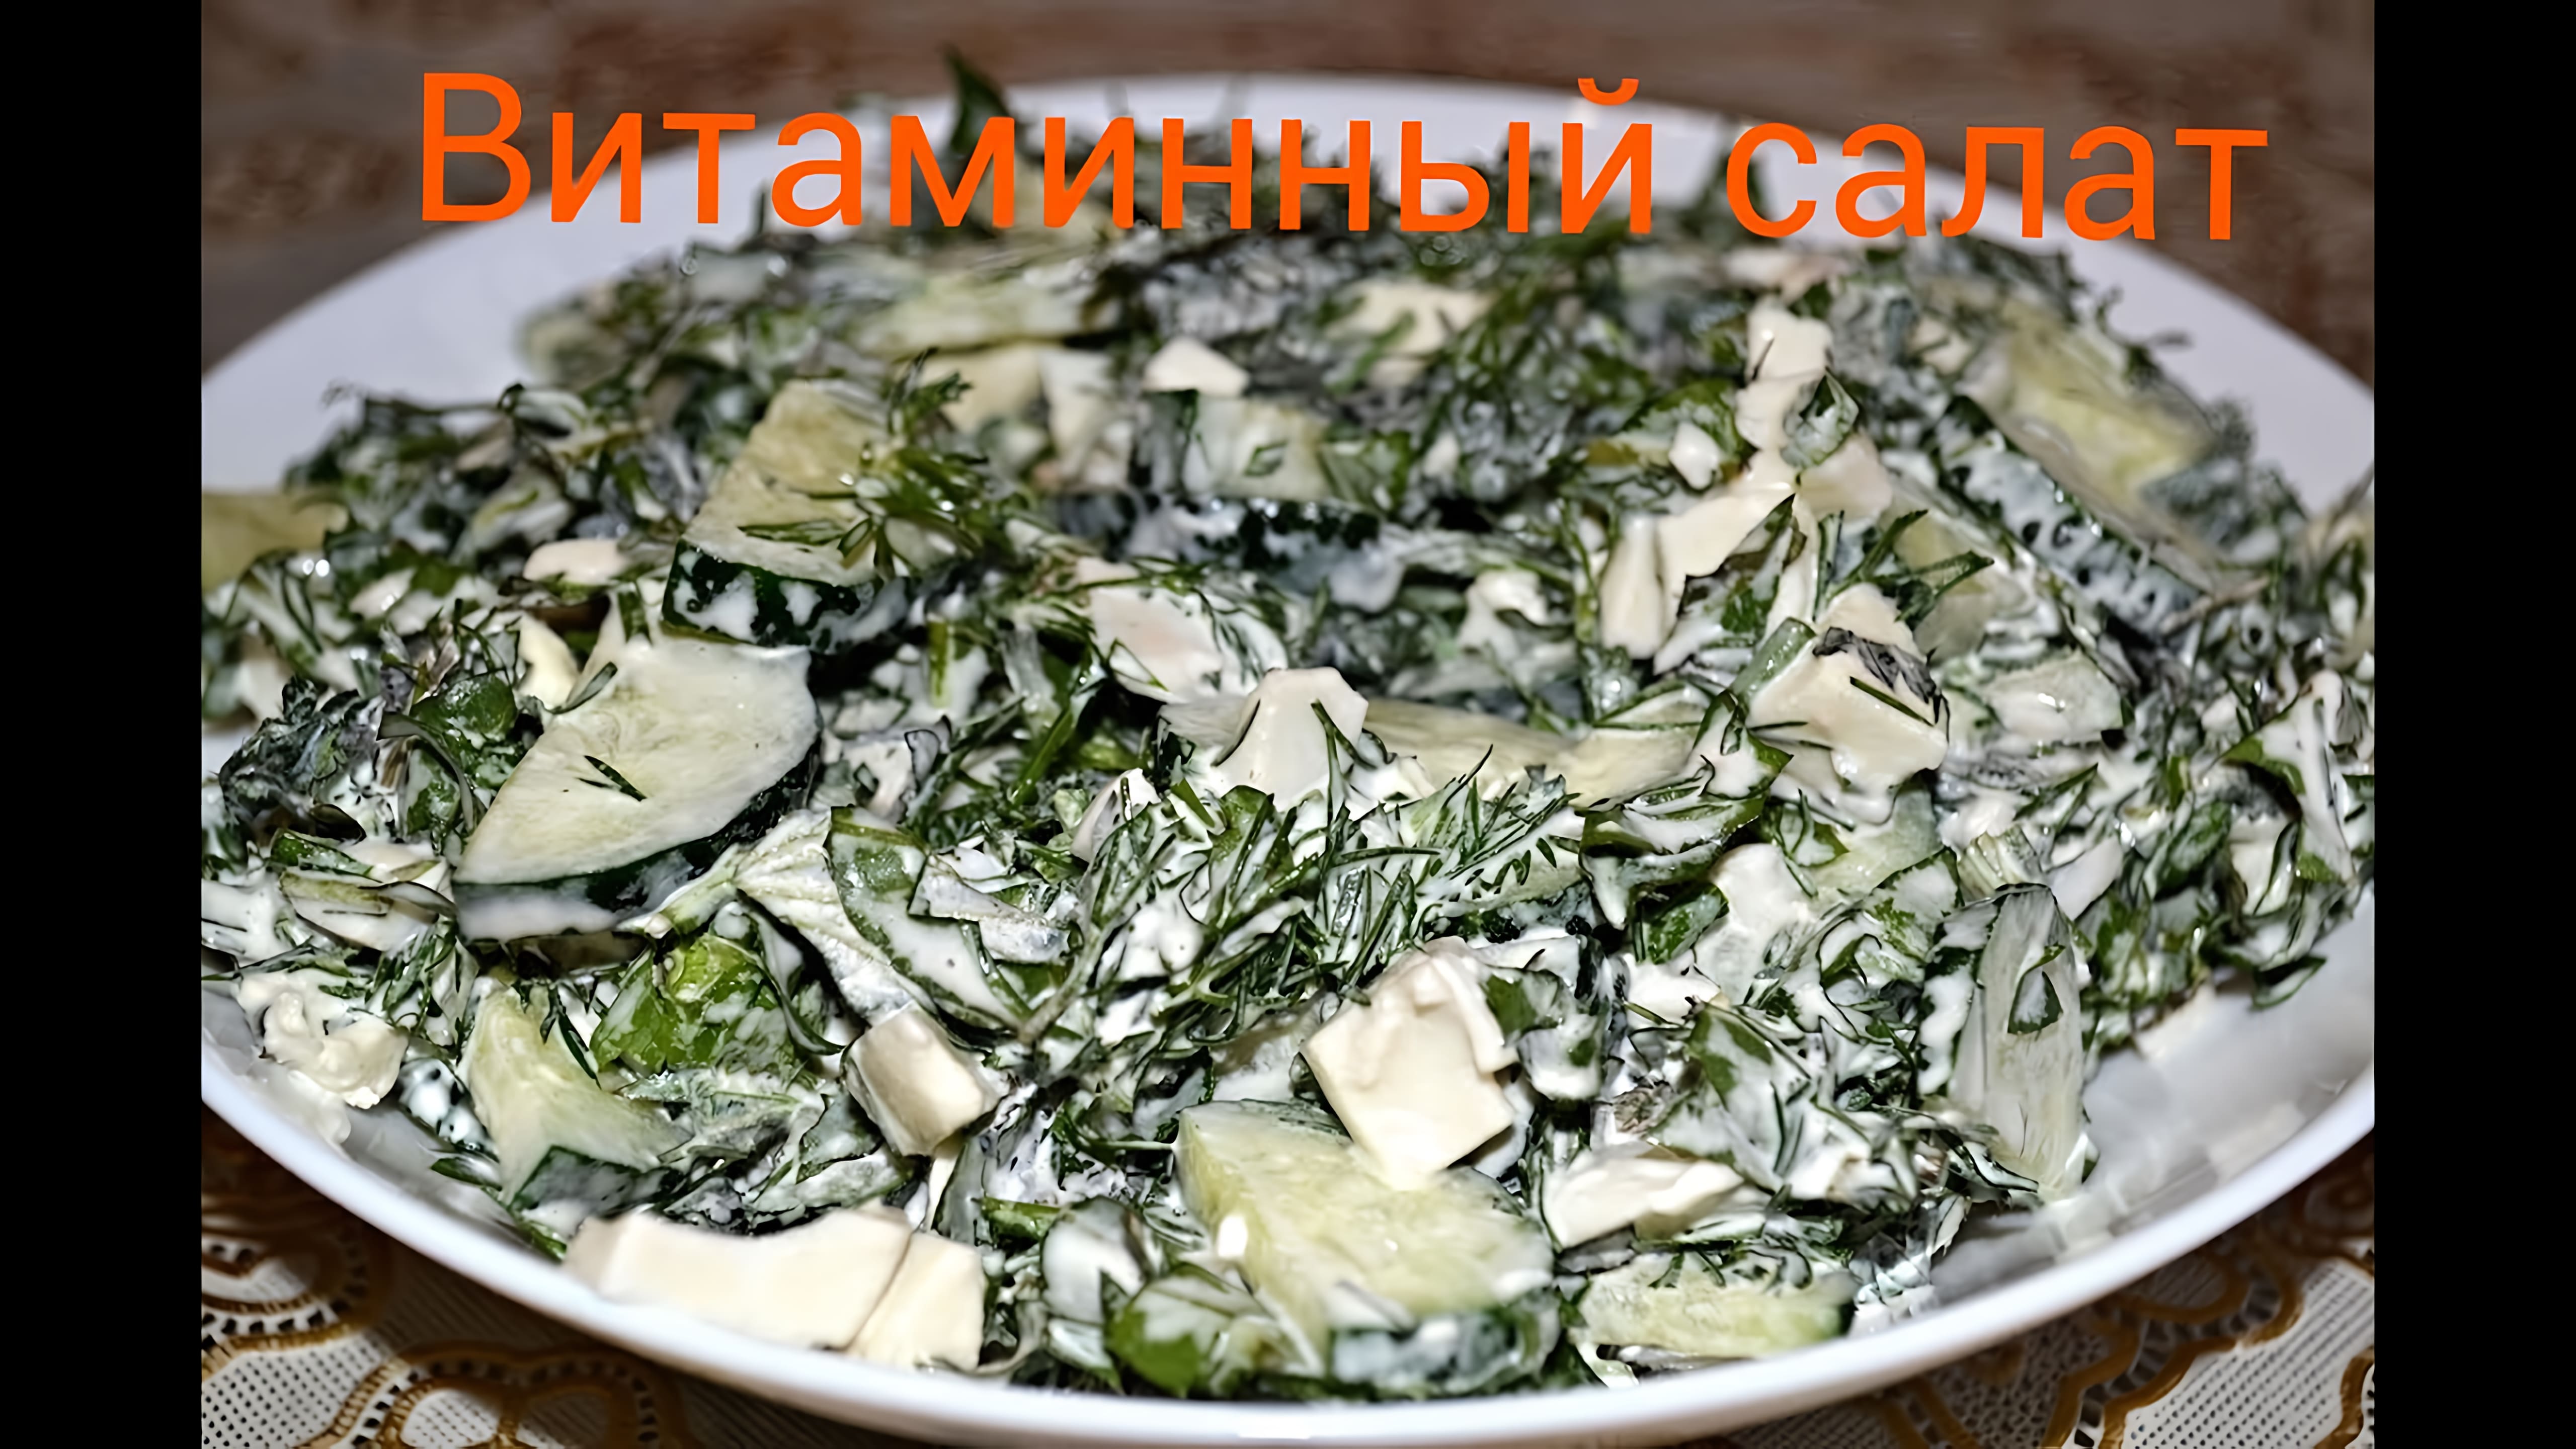 Видео: Витаминный салат с литьями крапивы и одуванчика.Ну очень полезно.